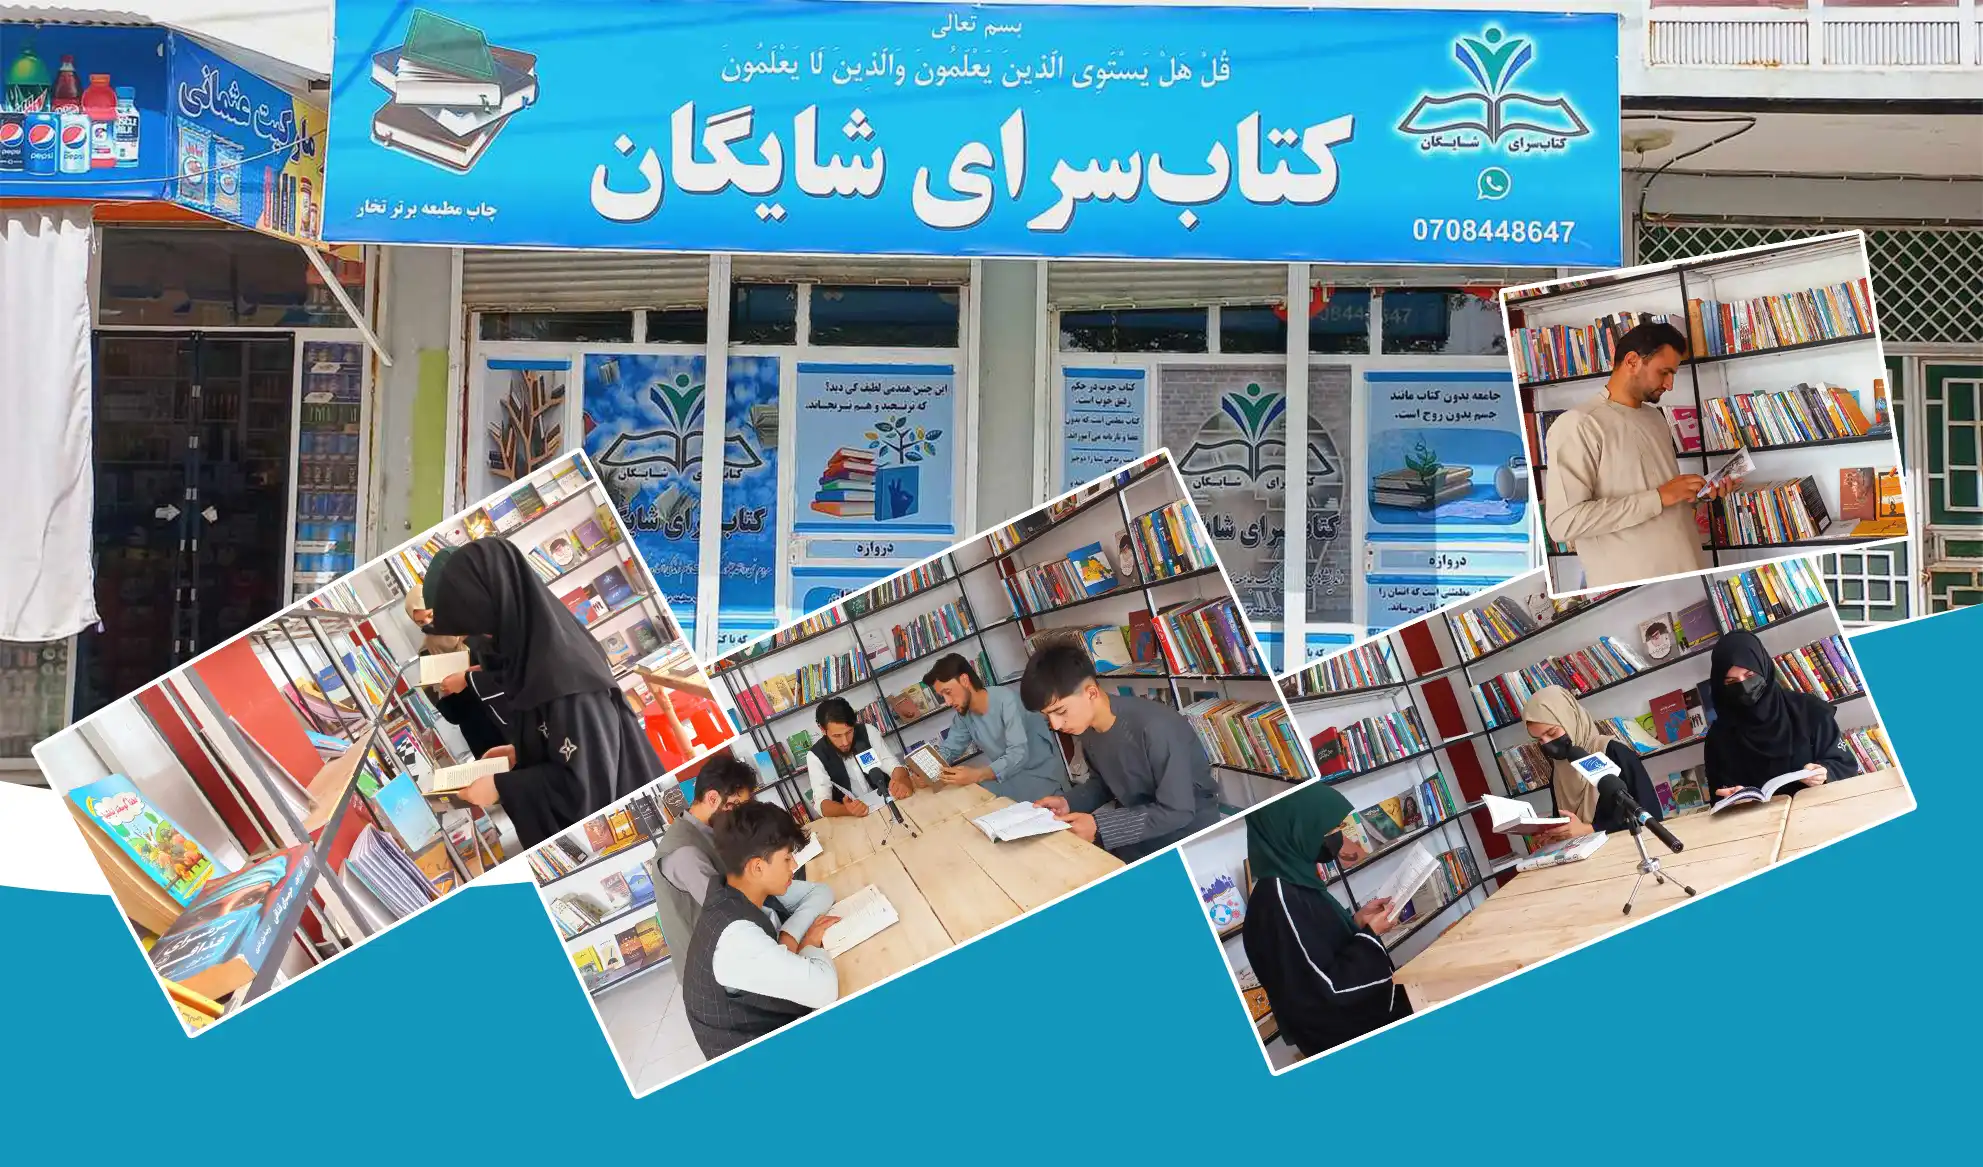 تعدادی از جوانان در تخار با ایجاد کتابخانه‌یی برای زنان و دختران زمینۀ مطالعه را فراهم کرده‌اند